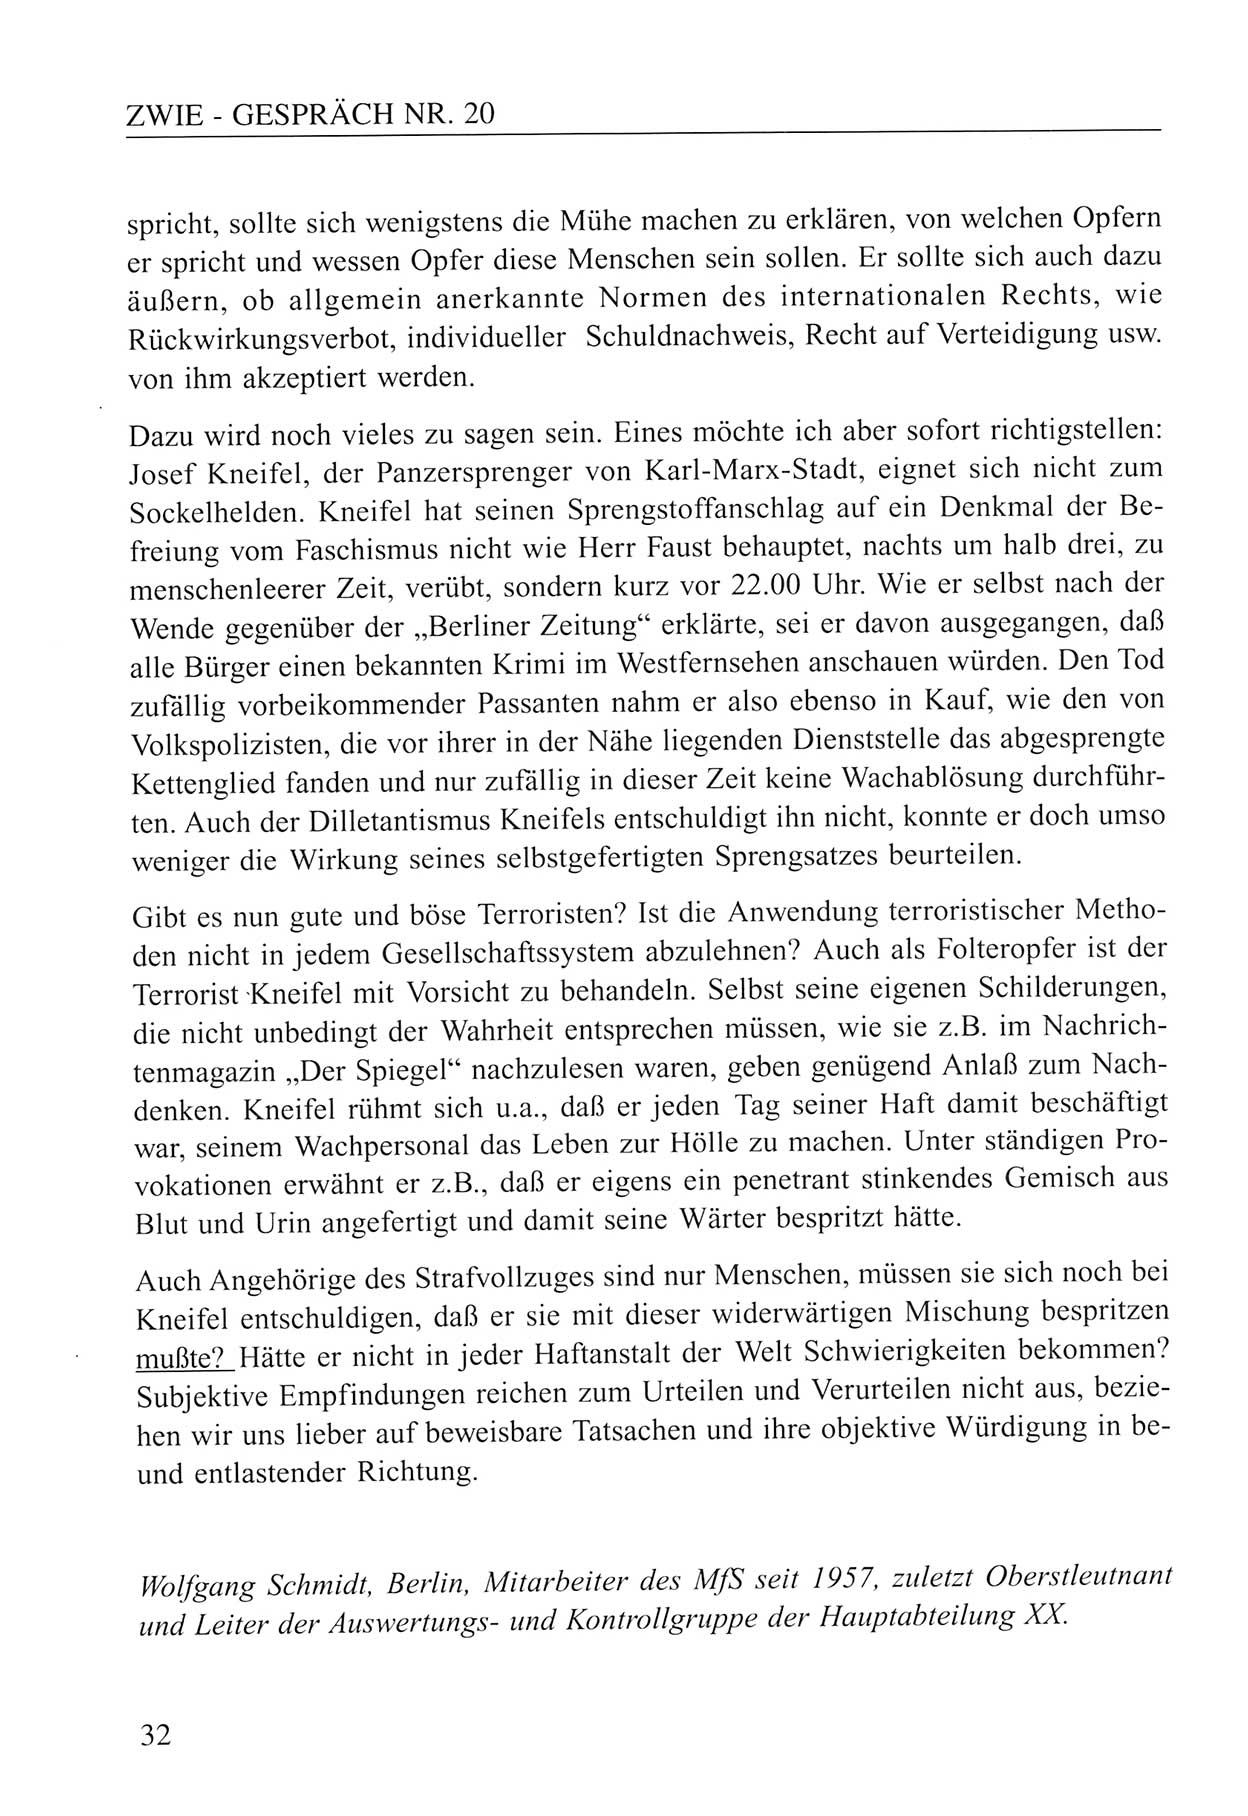 Zwie-Gespräch, Beiträge zum Umgang mit der Staatssicherheits-Vergangenheit [Deutsche Demokratische Republik (DDR)], Ausgabe Nr. 20, Berlin 1994, Seite 32 (Zwie-Gespr. Ausg. 20 1994, S. 32)